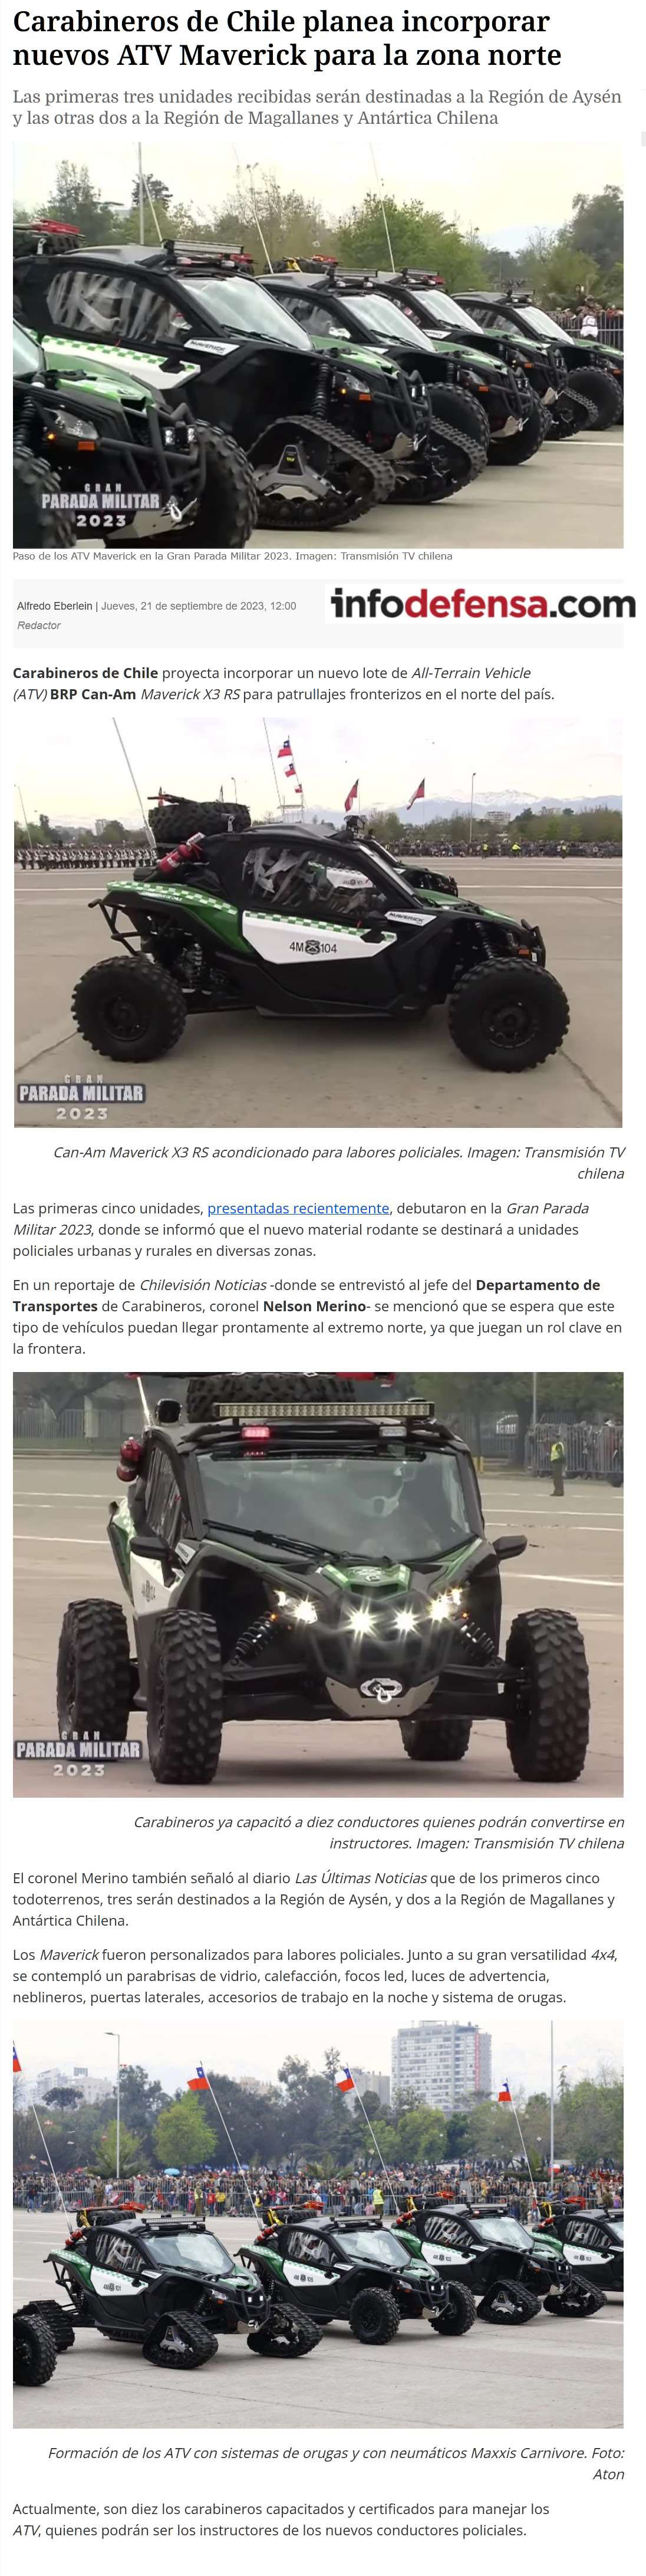 Noticias Carabineros de Chile y PDI ATV